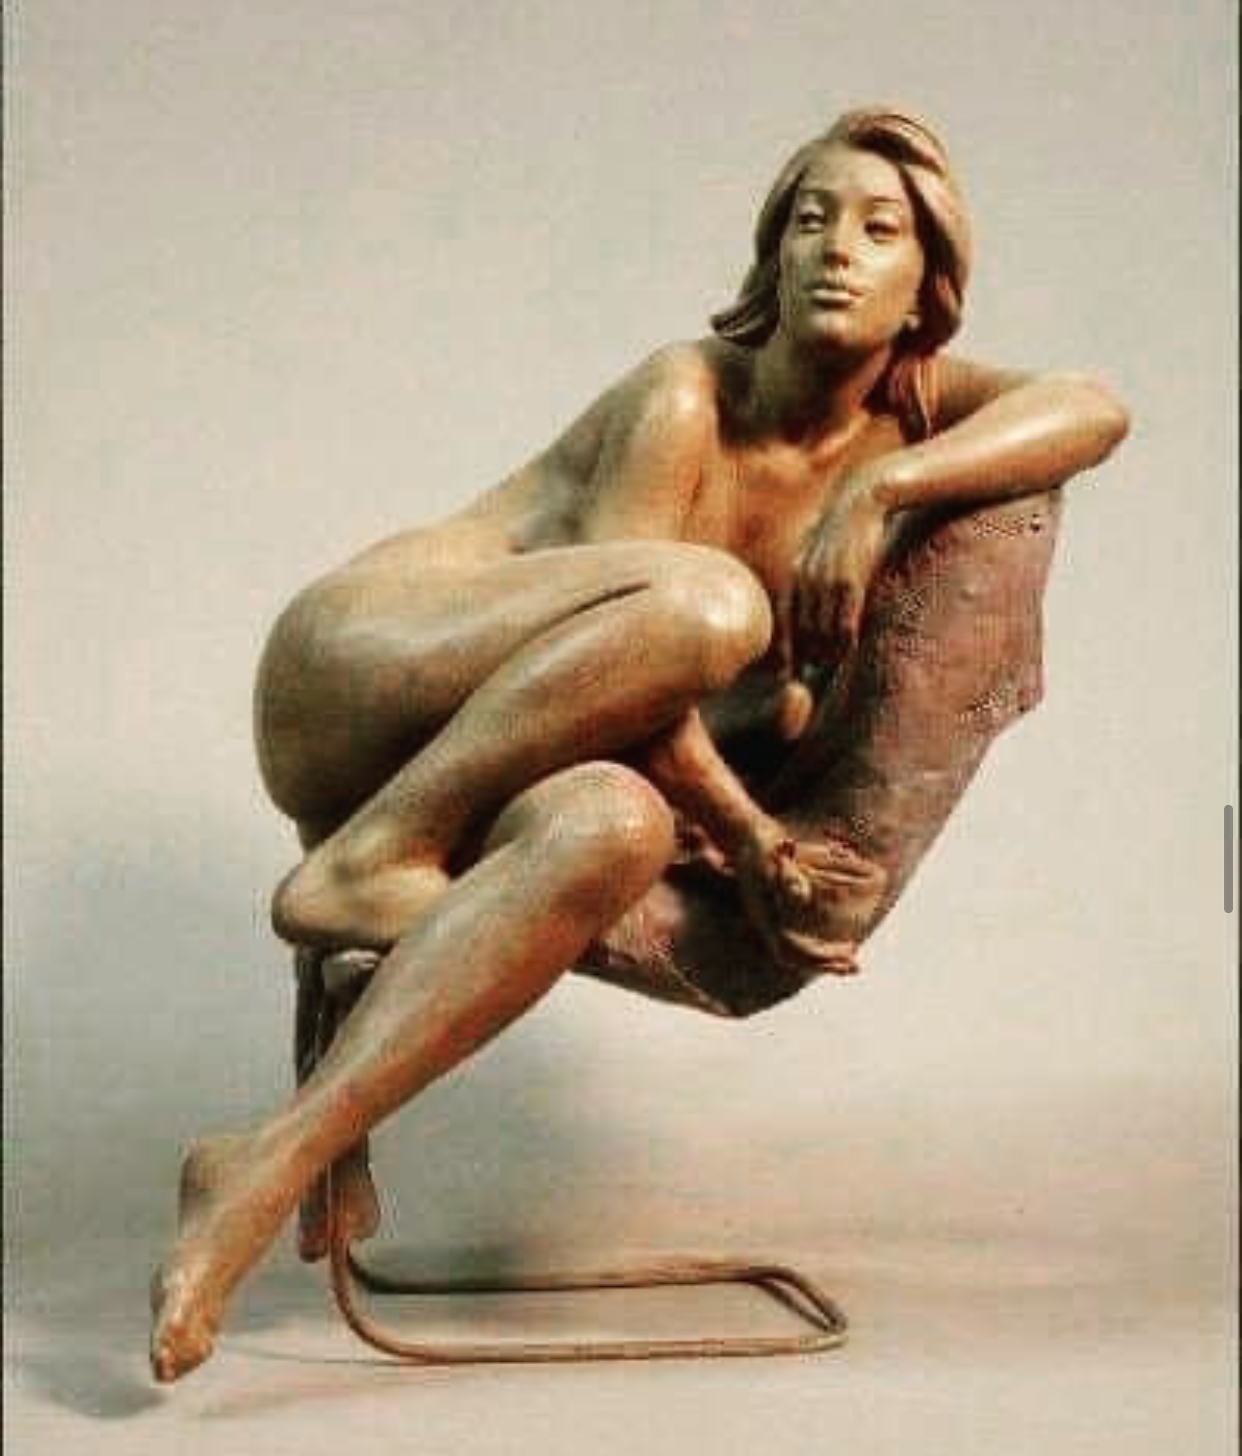 A nude woman sculpture